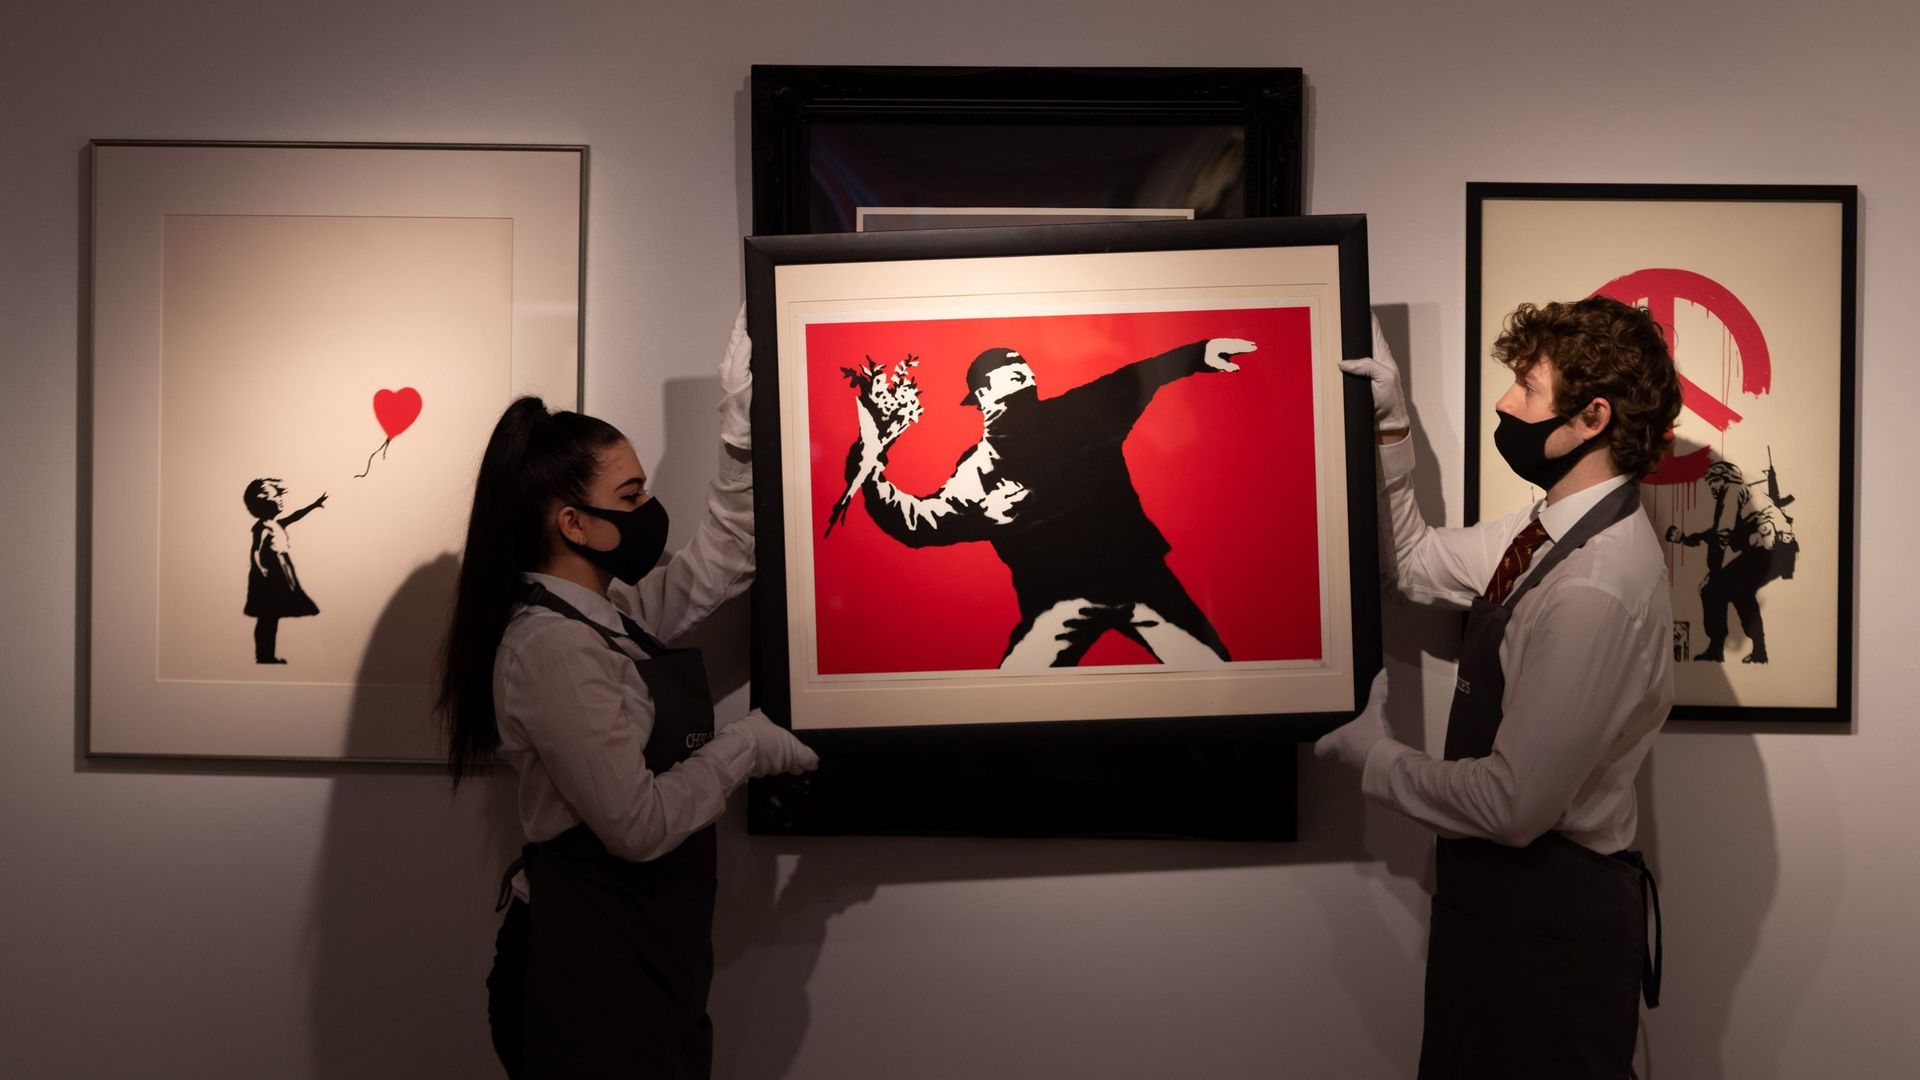 L’œuvre "Love is in the Air de Banksy" est exposée pendant les préparatifs de la vente en ligne à la maison de vente aux enchères Christies, le 26 mars 2021 à Londres, en Angleterre. La vente comprend "The Prints & Multiples" et "Banksy : I Can’t Believe 